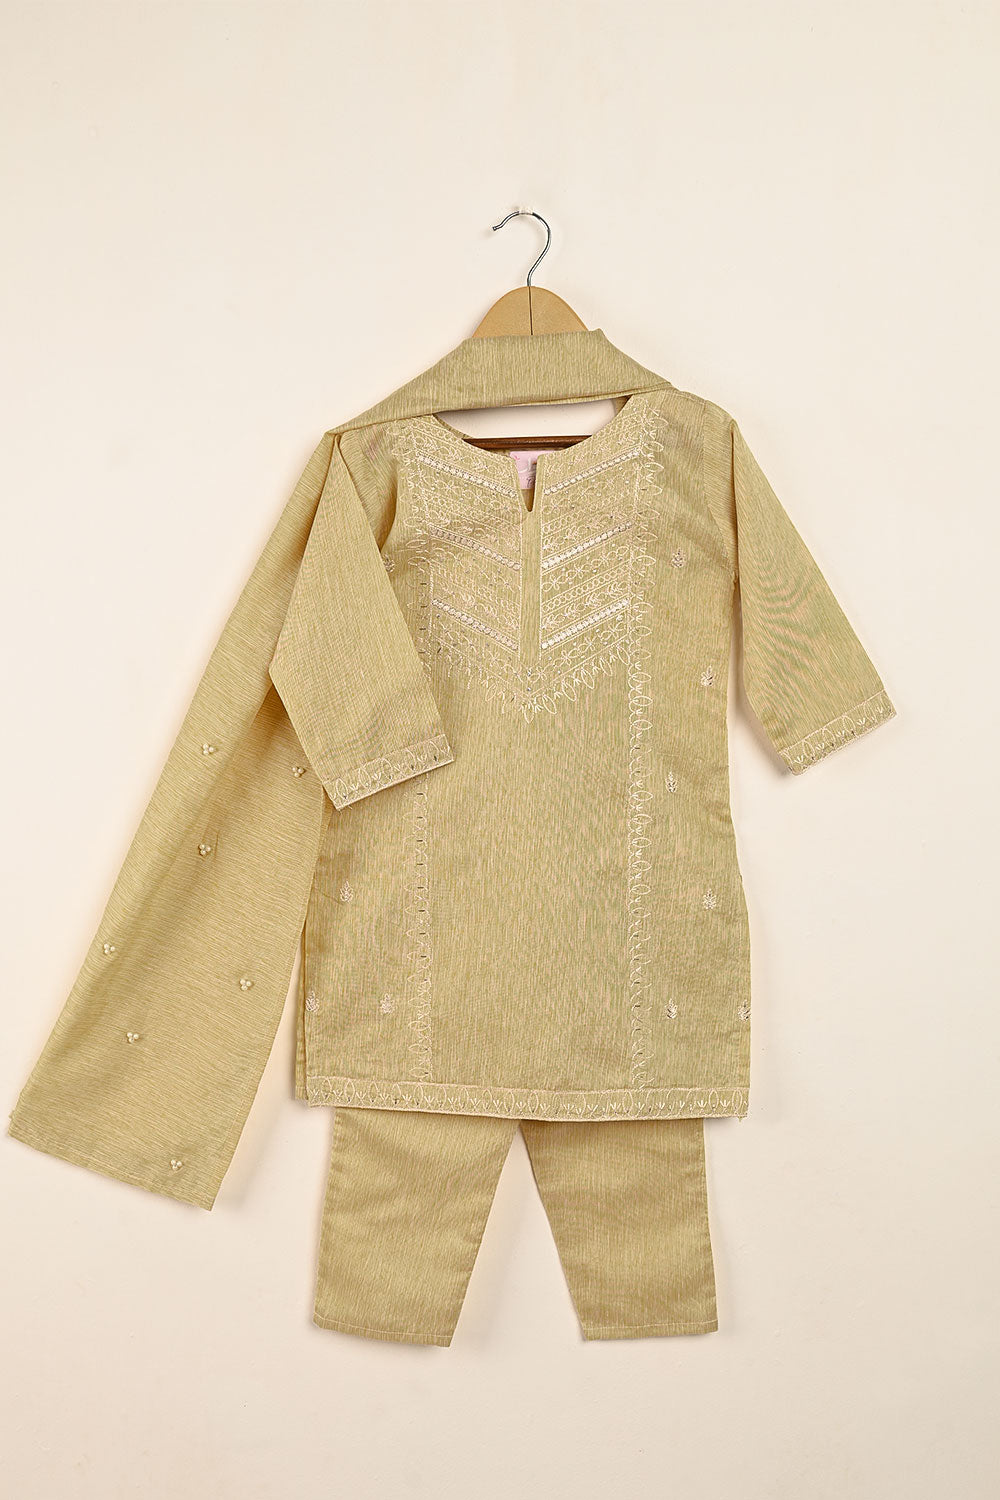 TKF-121-SKIN - Kids 3Pc Ready to Wear Embroidered Poly Slub Dress